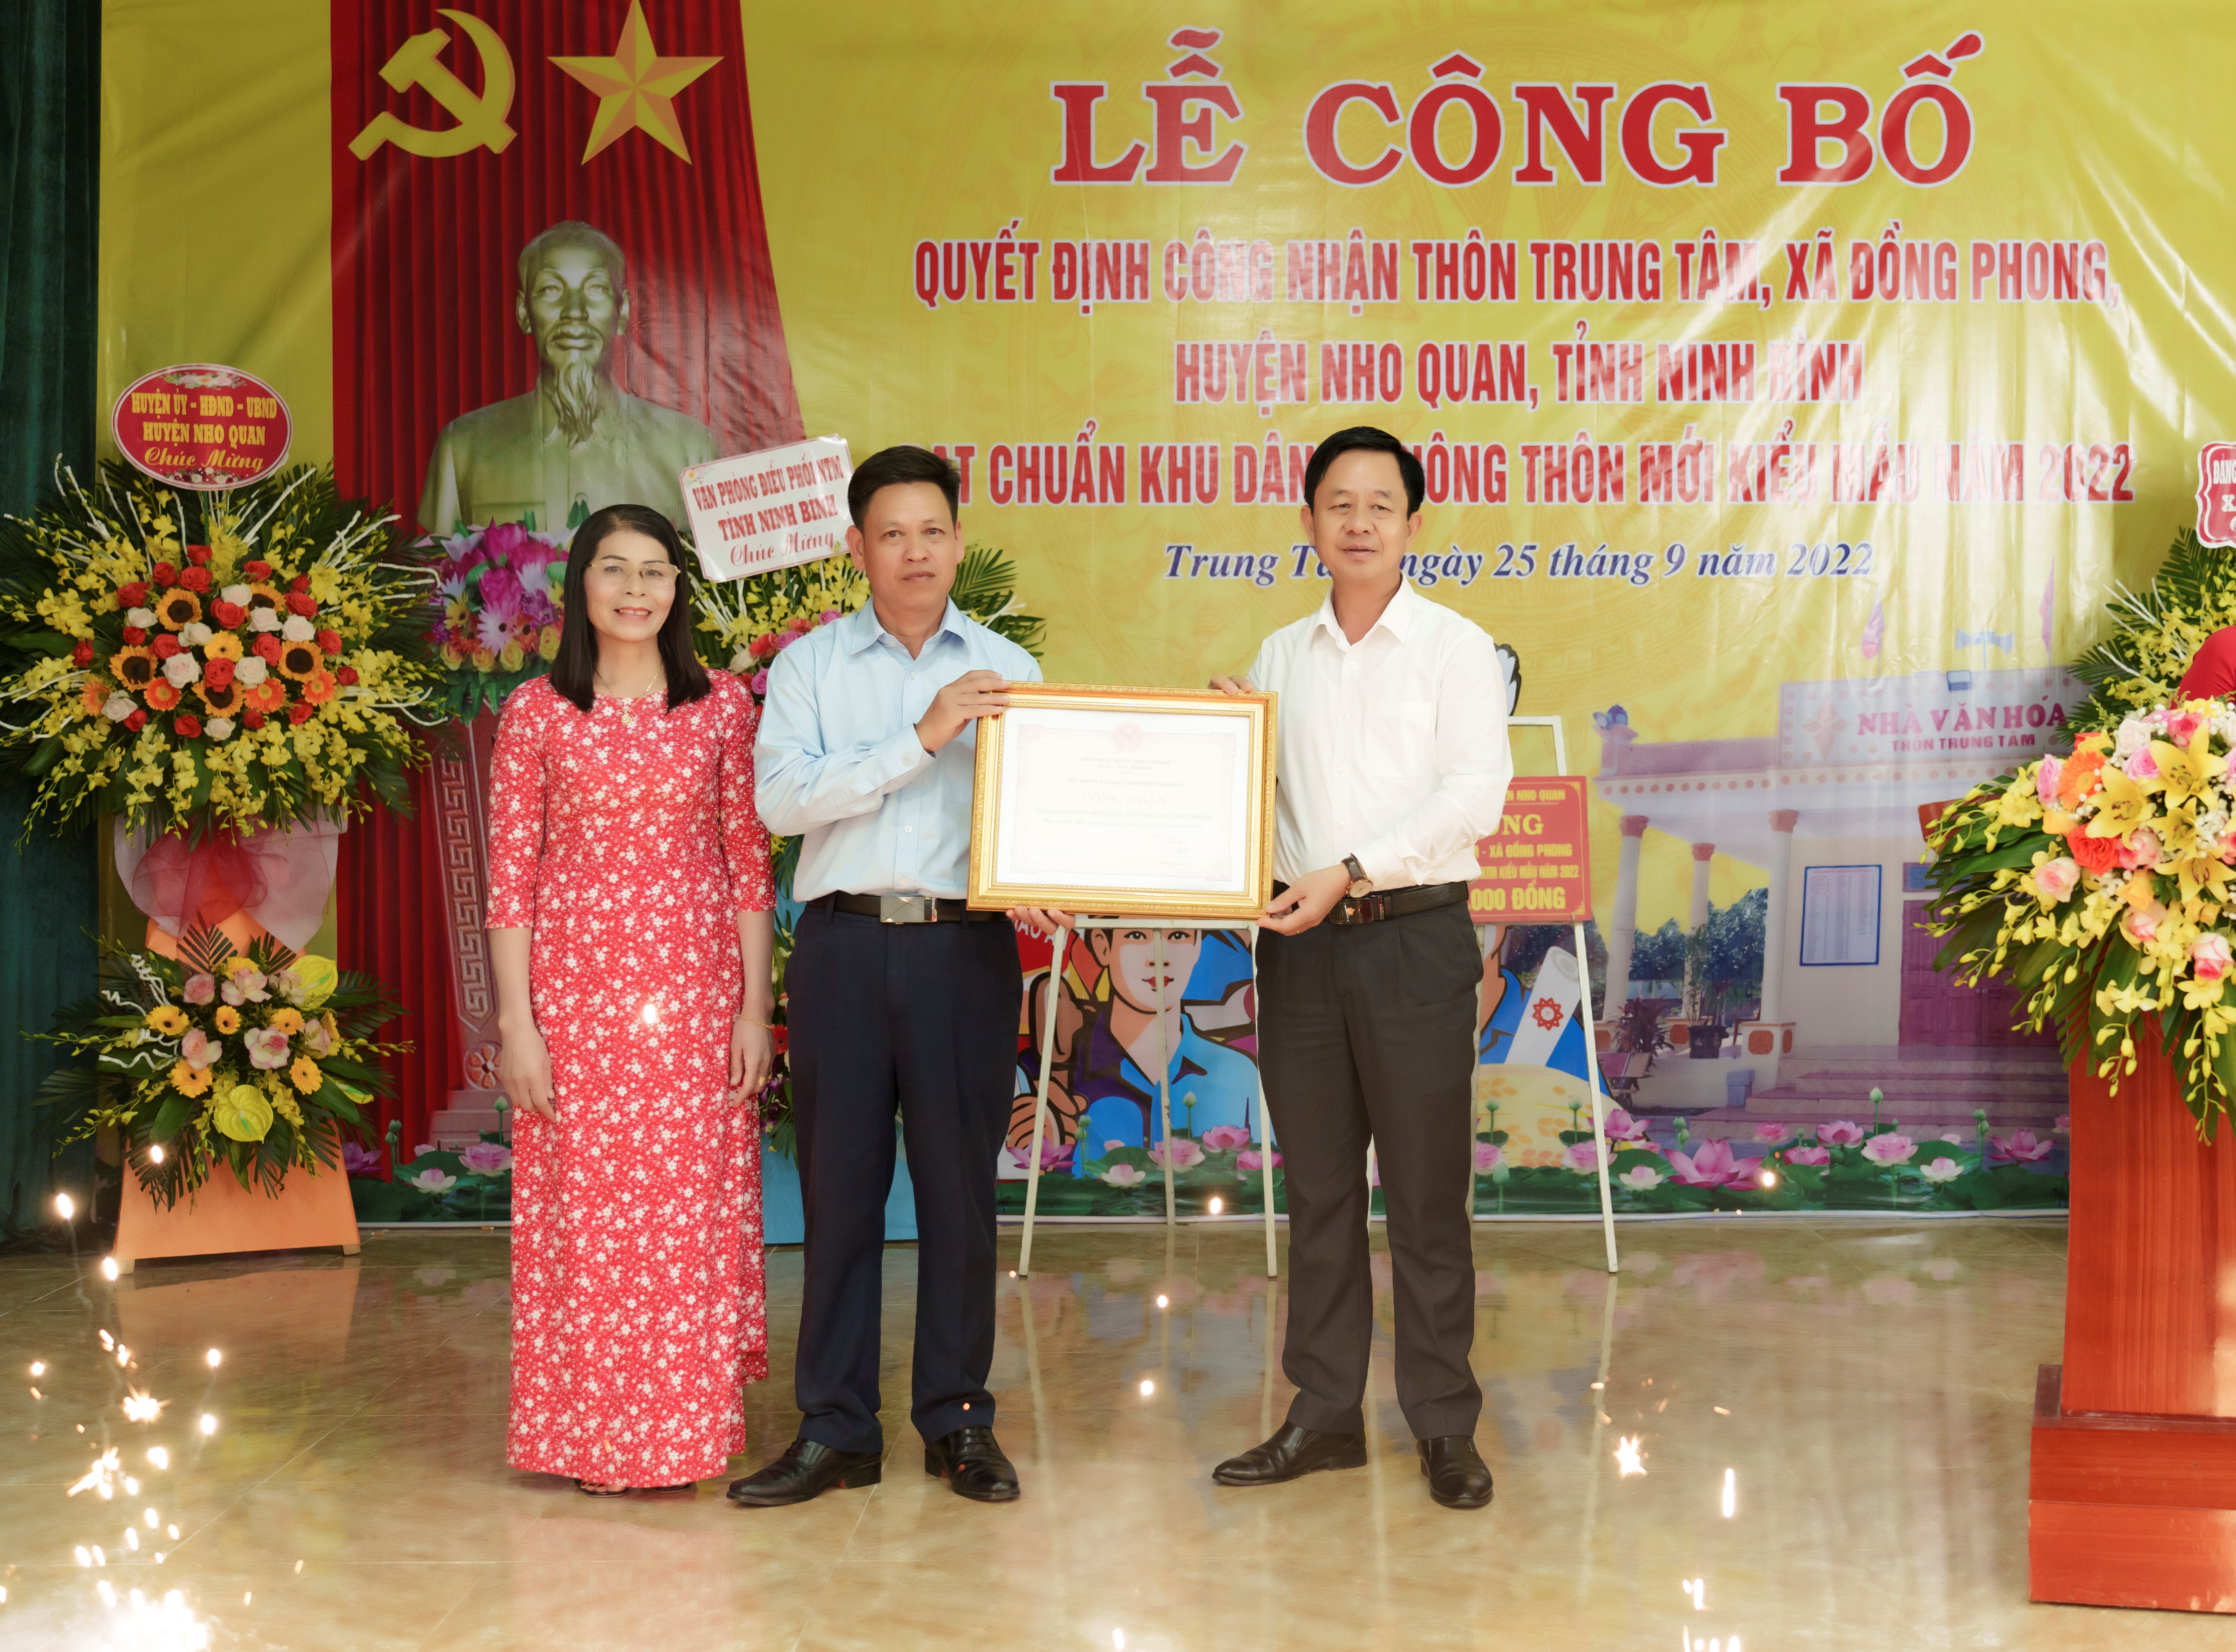 Thôn Trung Tâm, xã Đồng Phong đón nhận danh hiệu Khu dân cư NTM kiểu mẫu